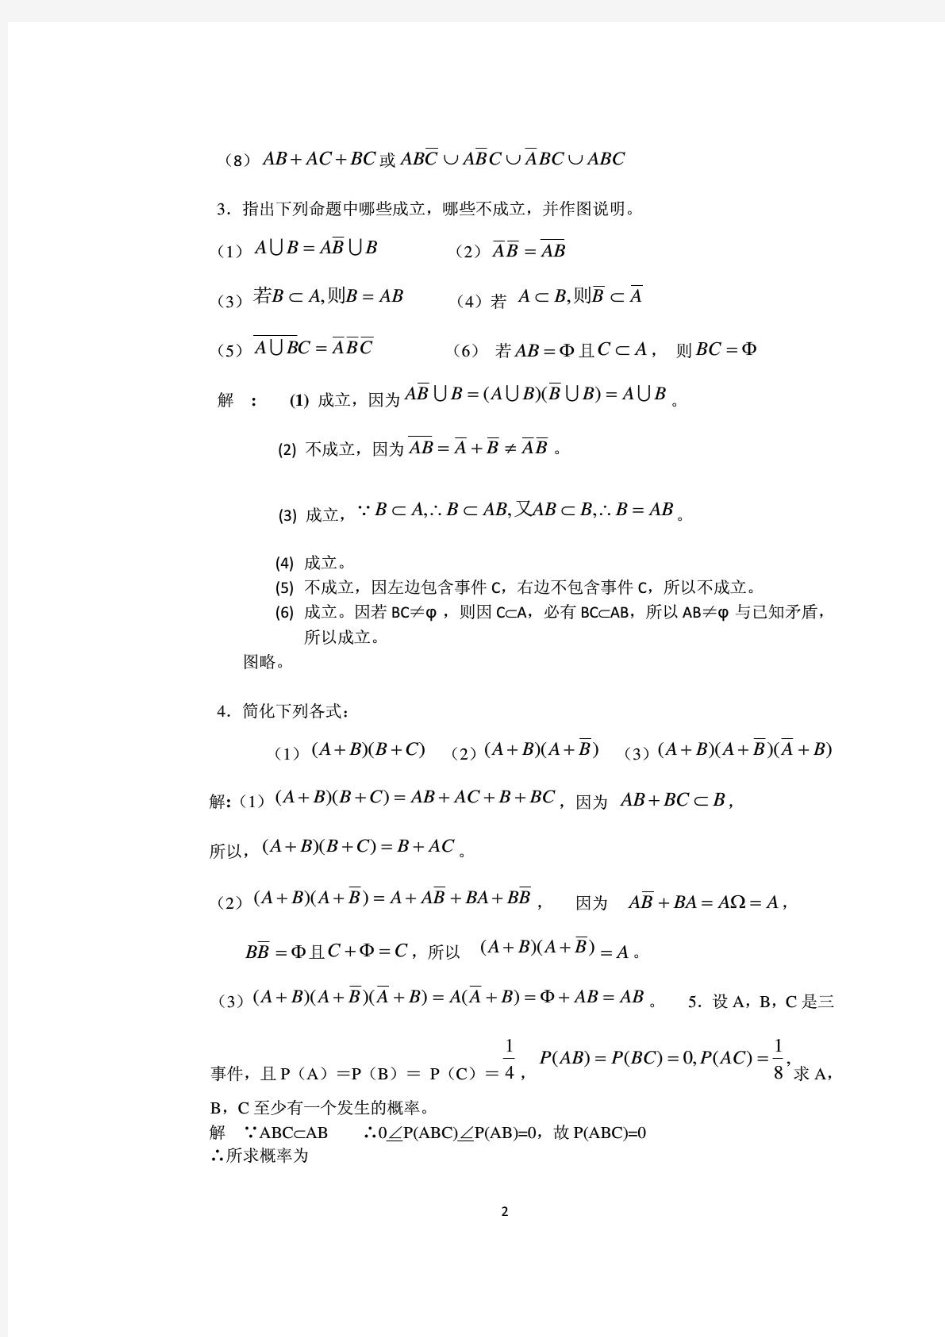 《概率论与数理统计》第三版_王松桂_科学出版社_课后习题答案